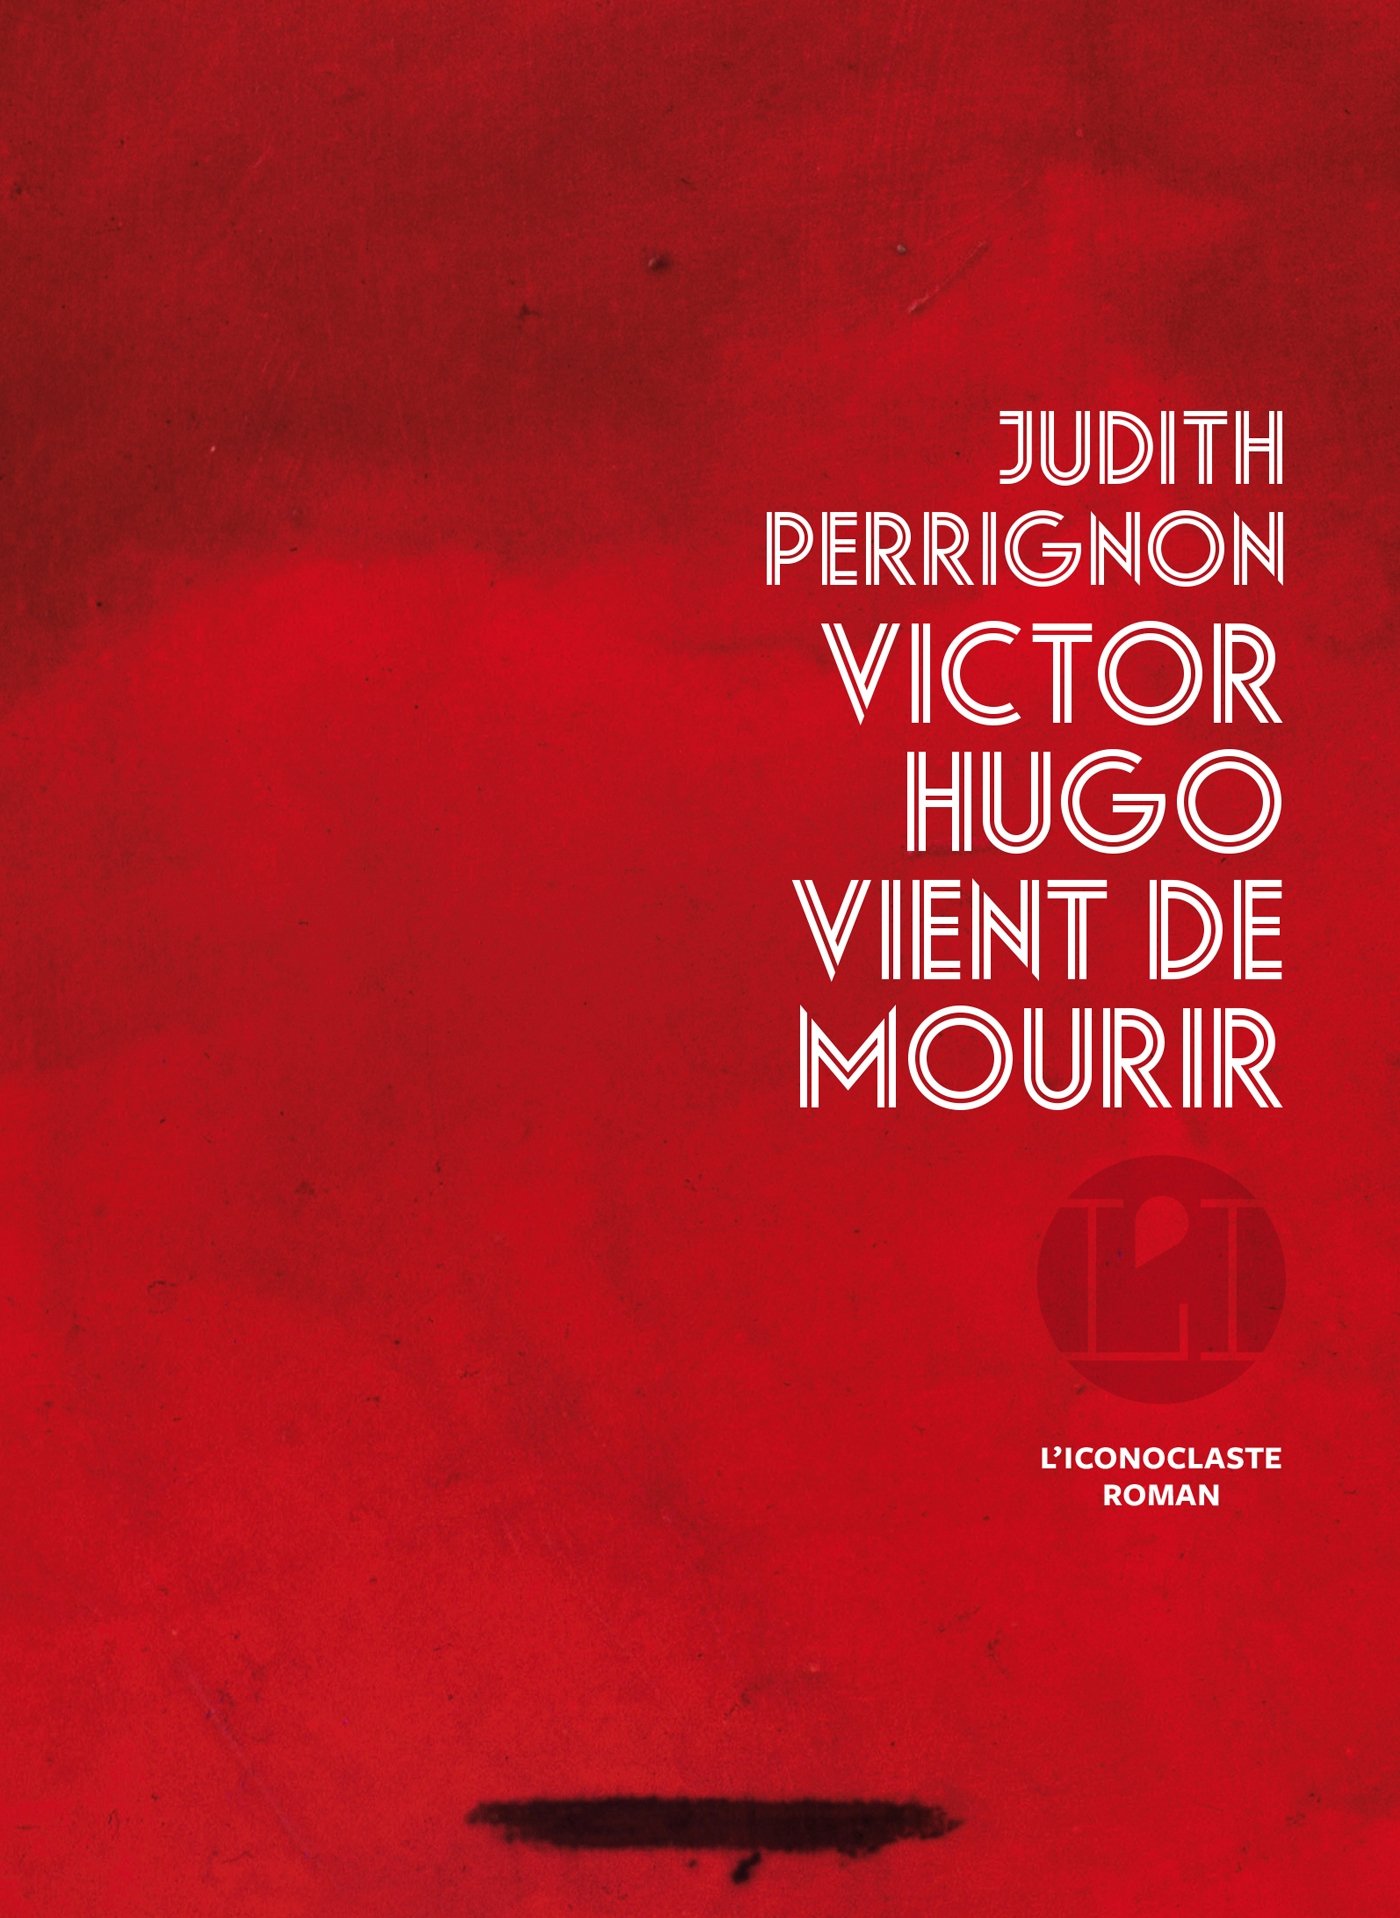 Victor Hugo vient de mourir de Judith Perrignon 81eiZbm-pgL